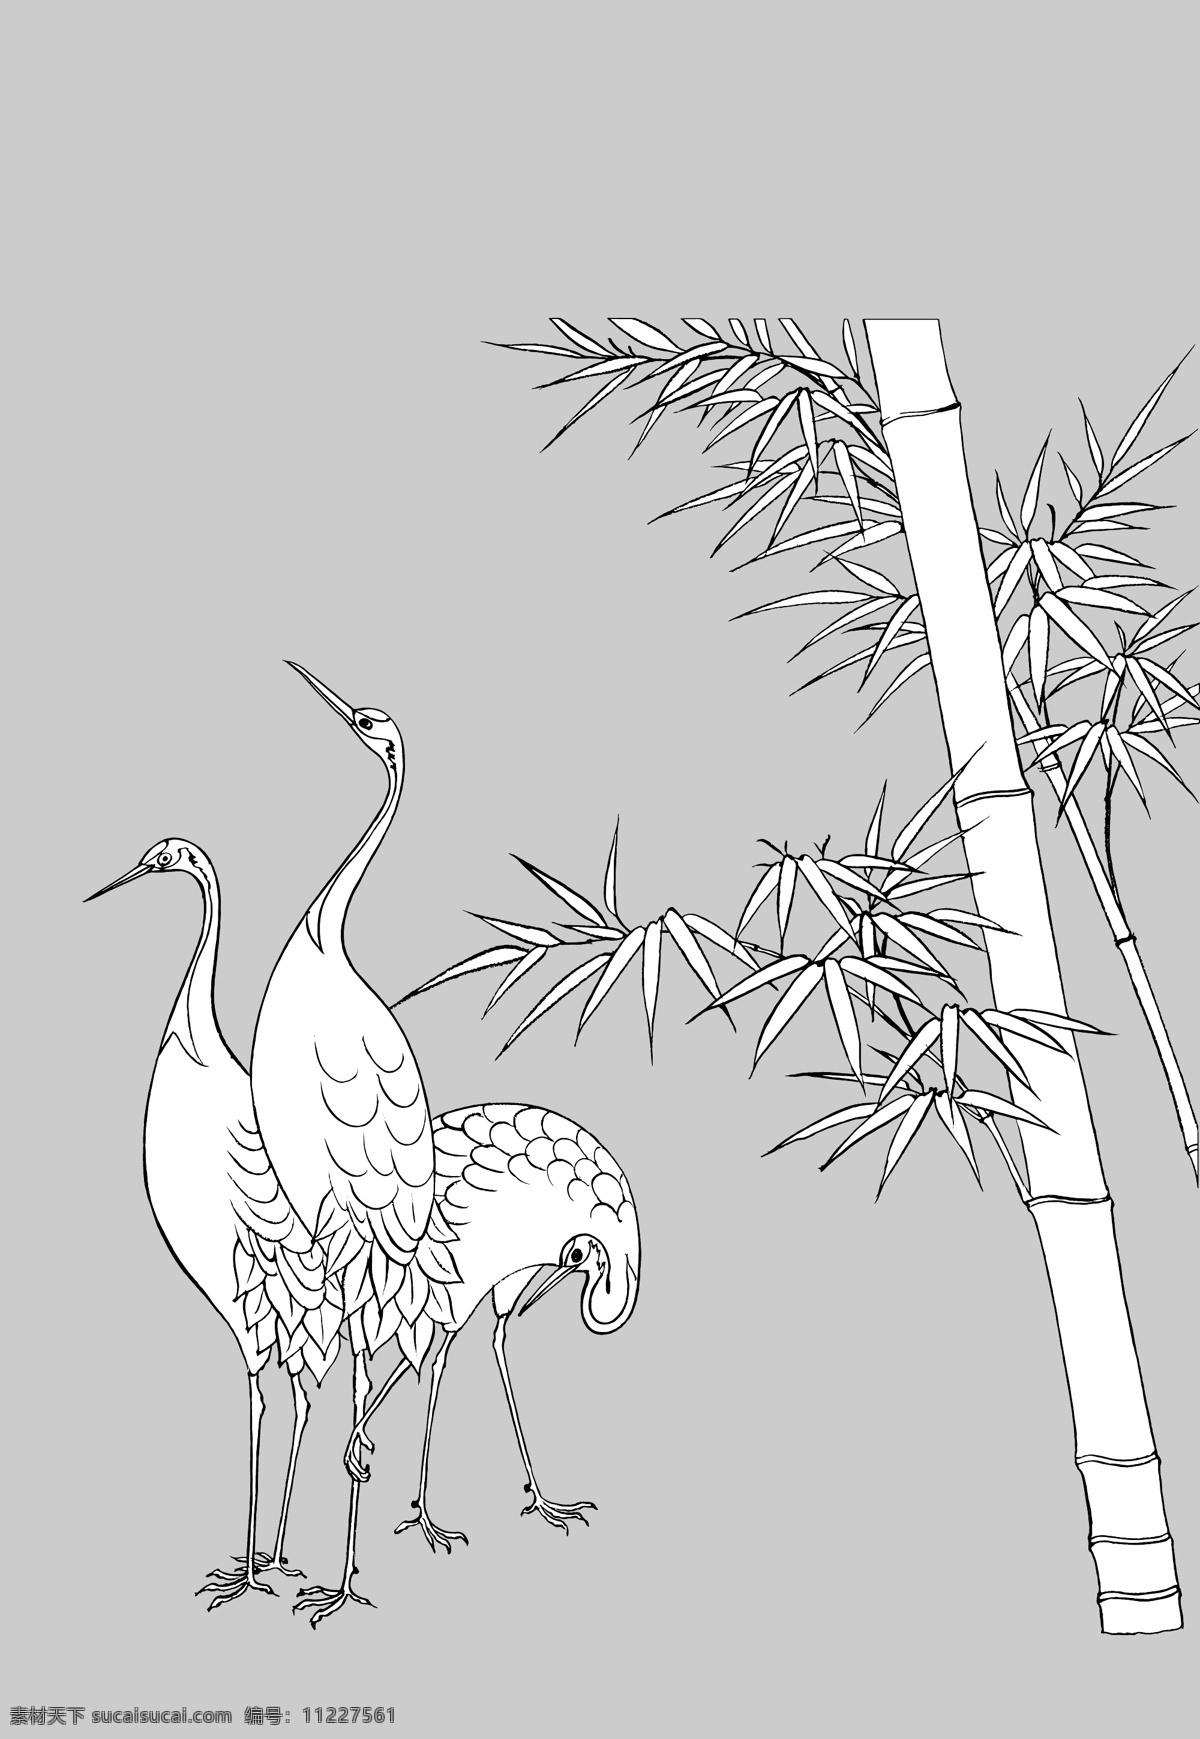 竹 鹤 花草 矢量图库 线描 自然景观 竹和鹤 线描花鸟 日常生活